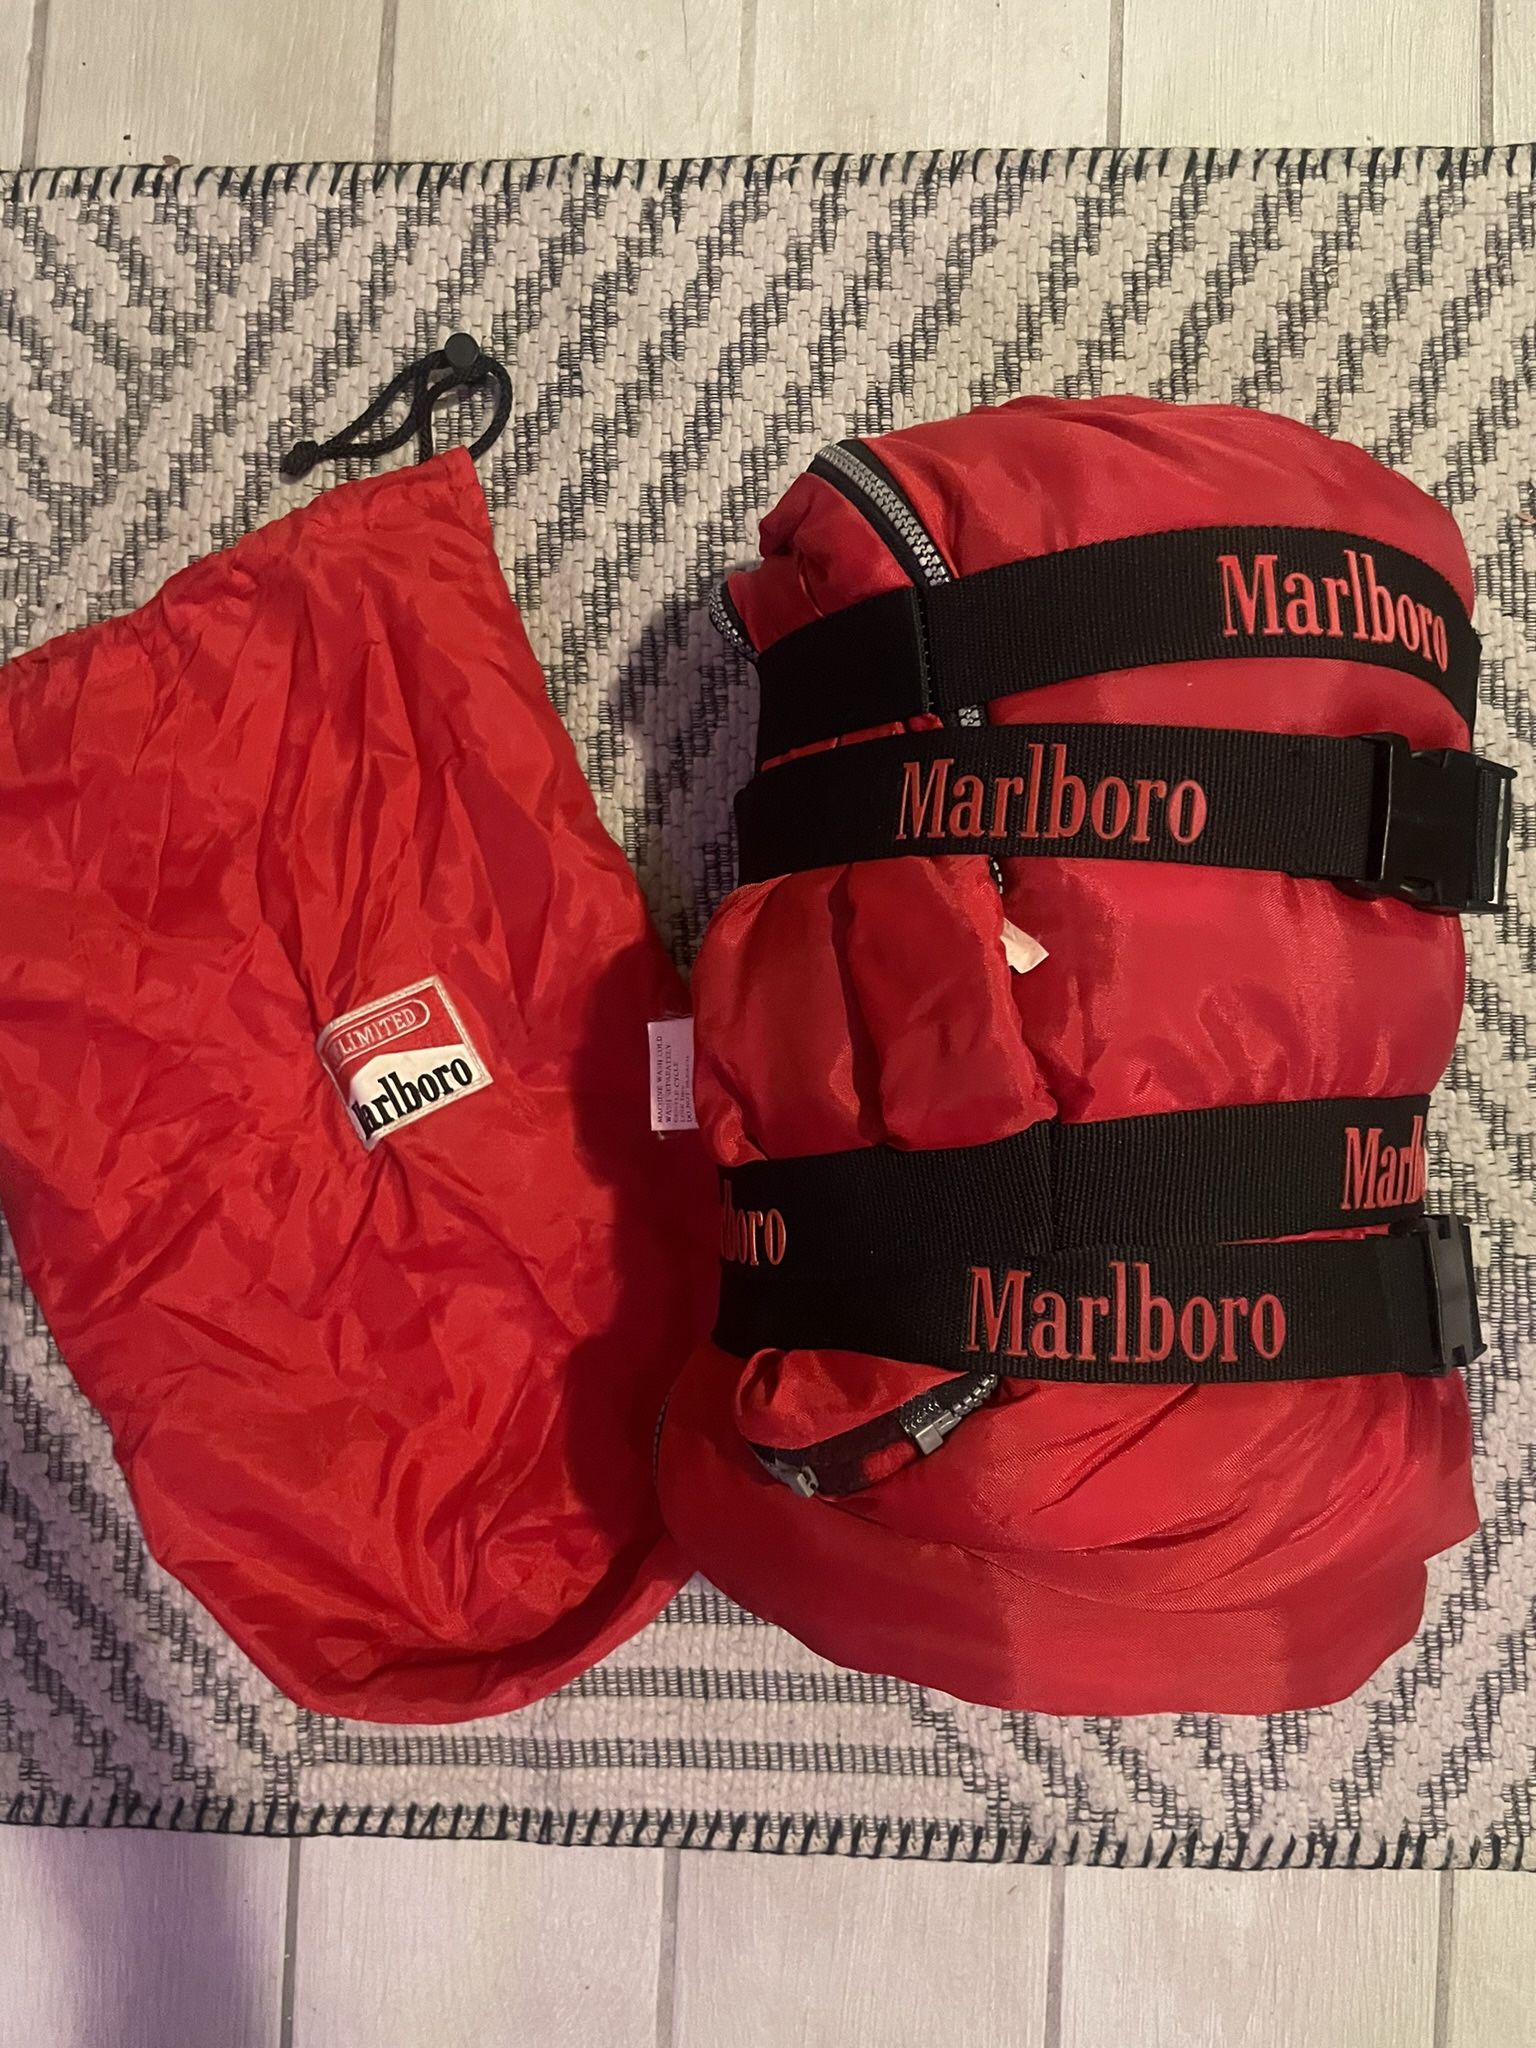 Marlboro Vintage Sleeping Bag 